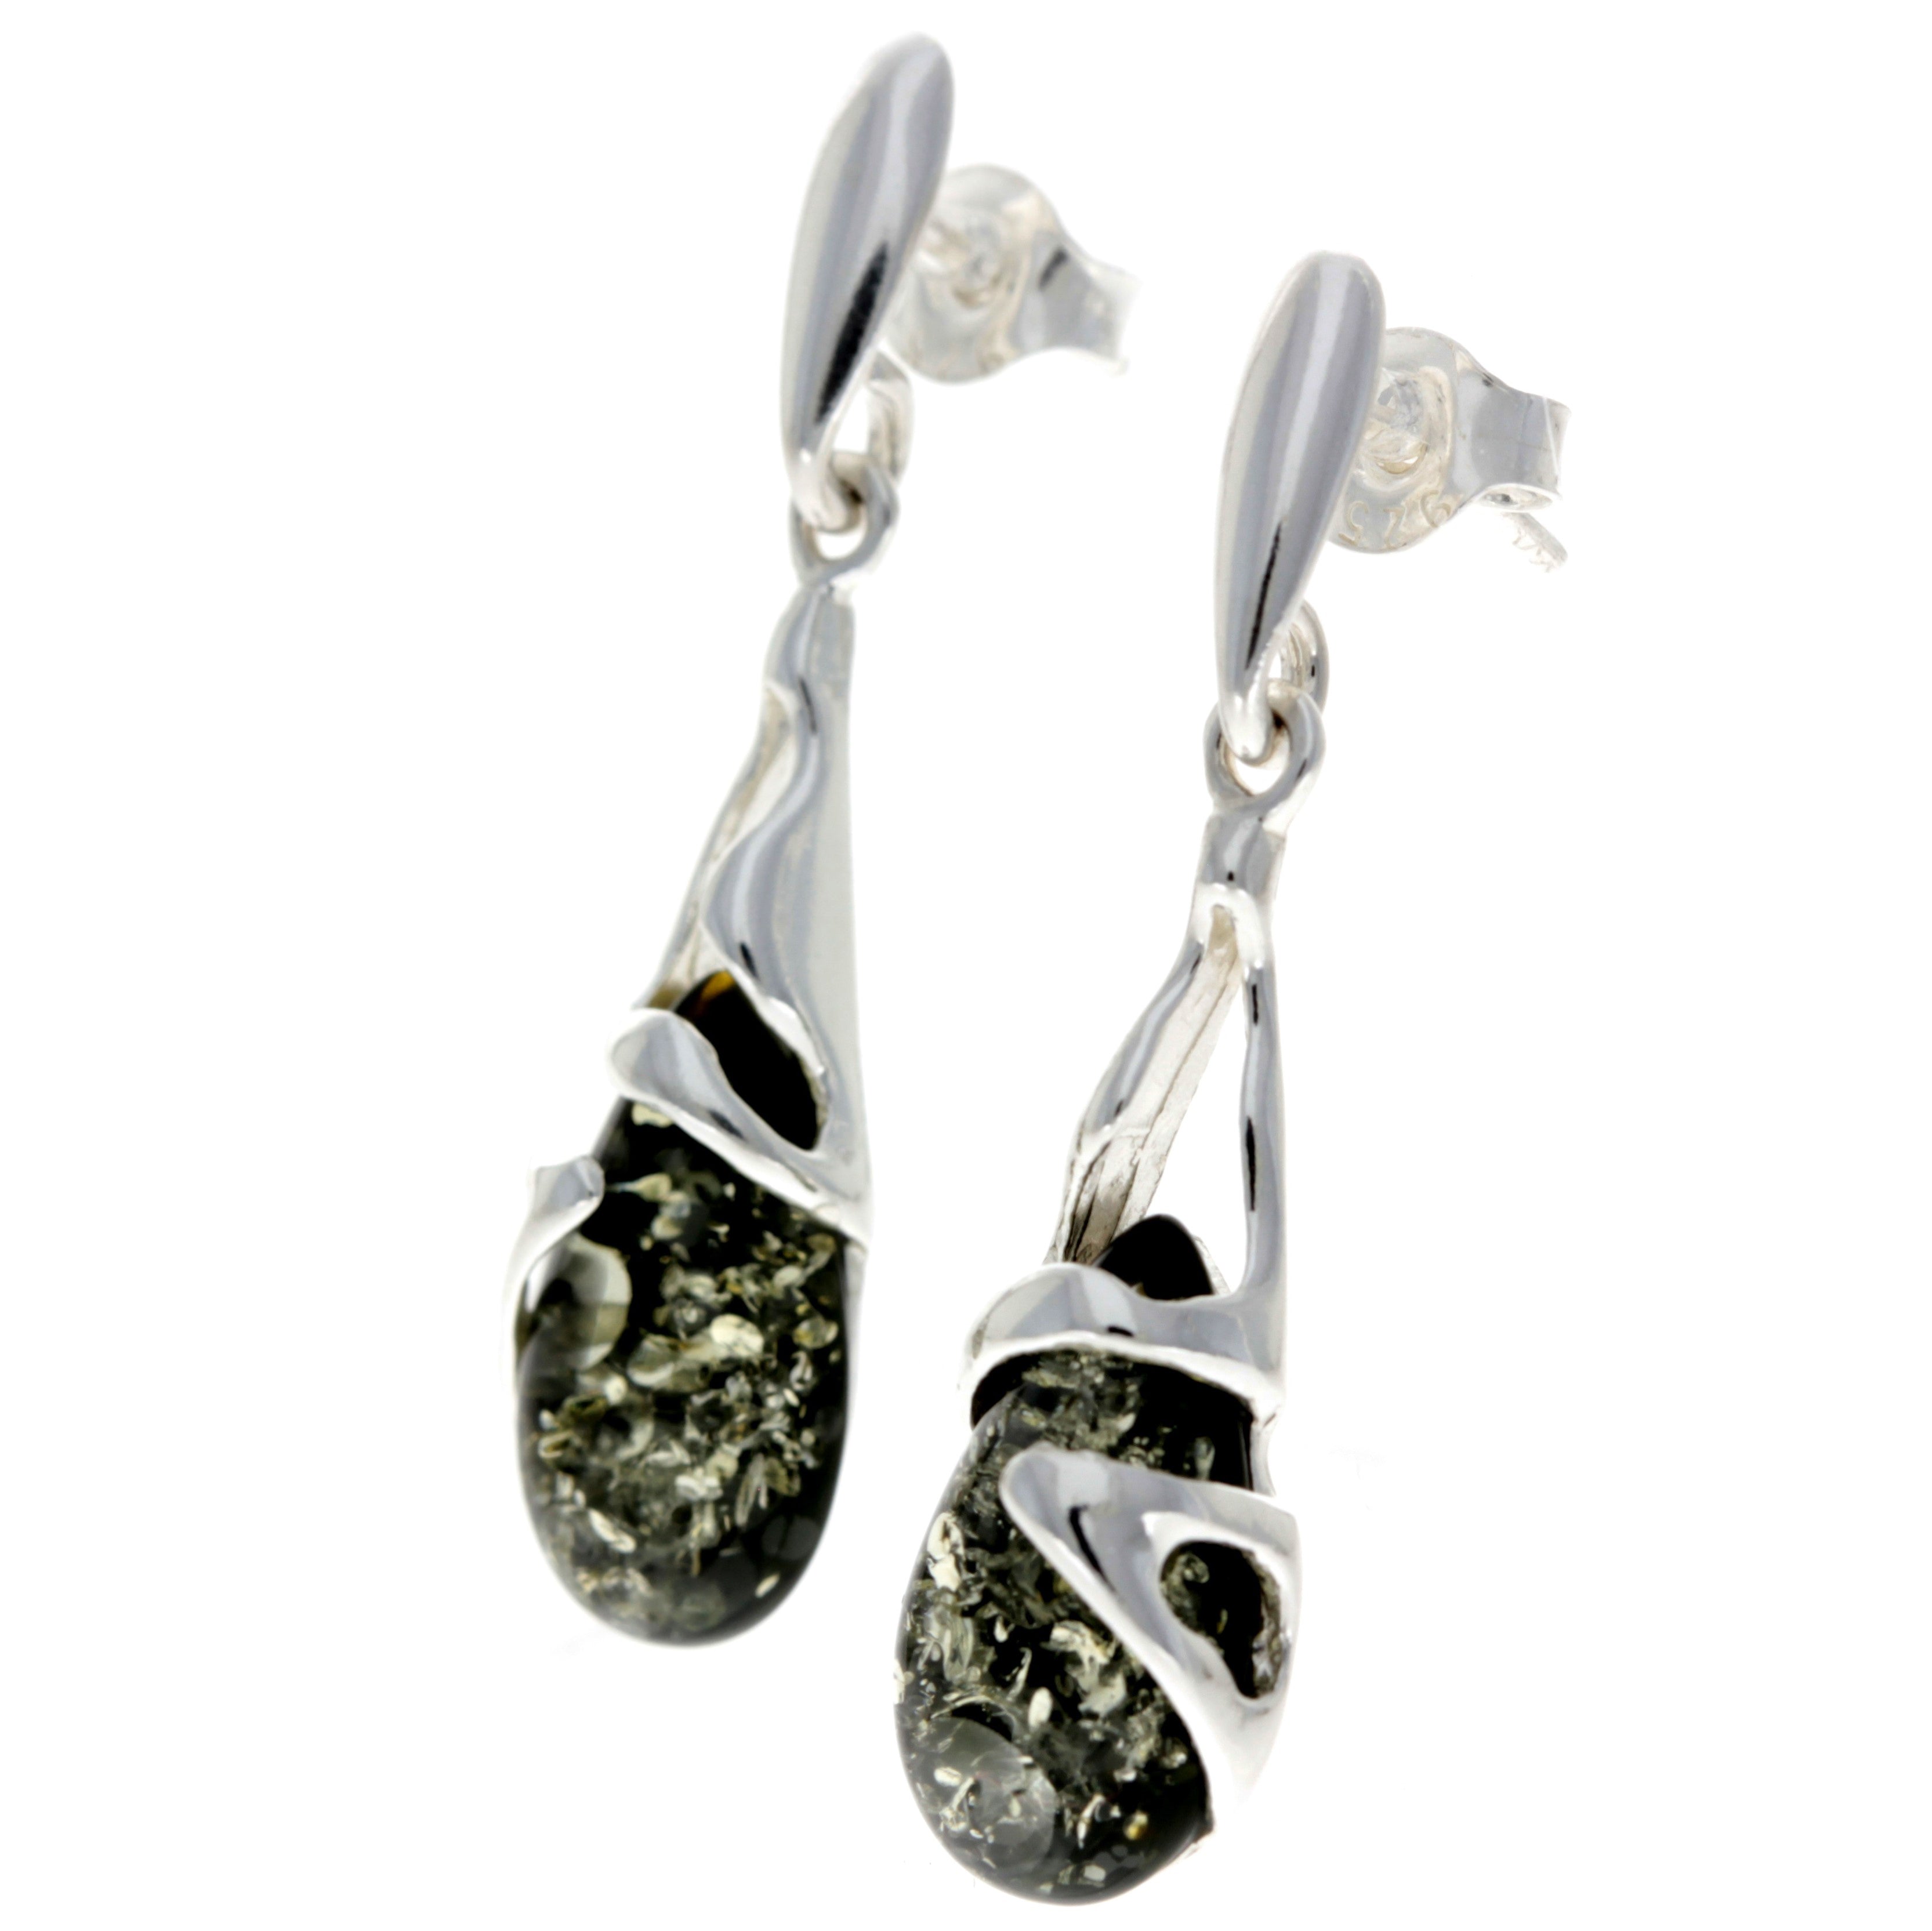 925 Sterling Silver & Genuine Baltic Amber Teardrop Modern Earrings - GL054